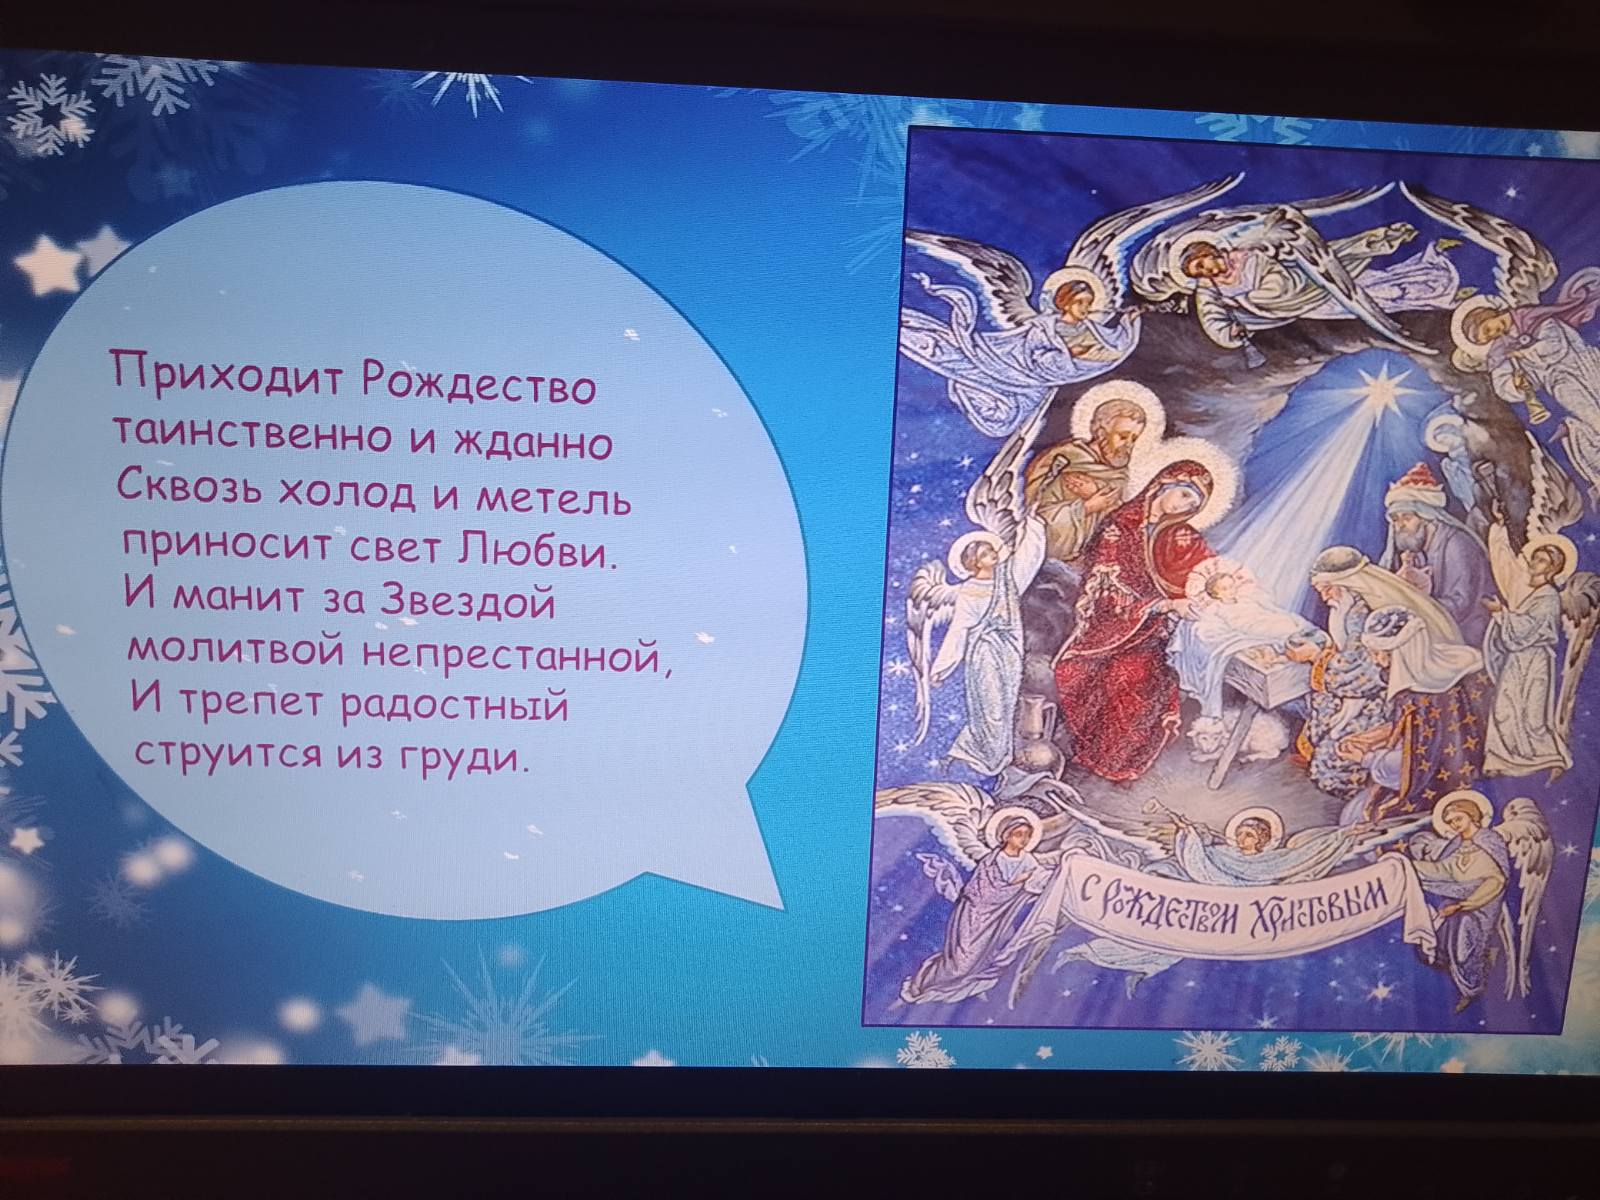 Рождество Христово- история праздника и традиции.